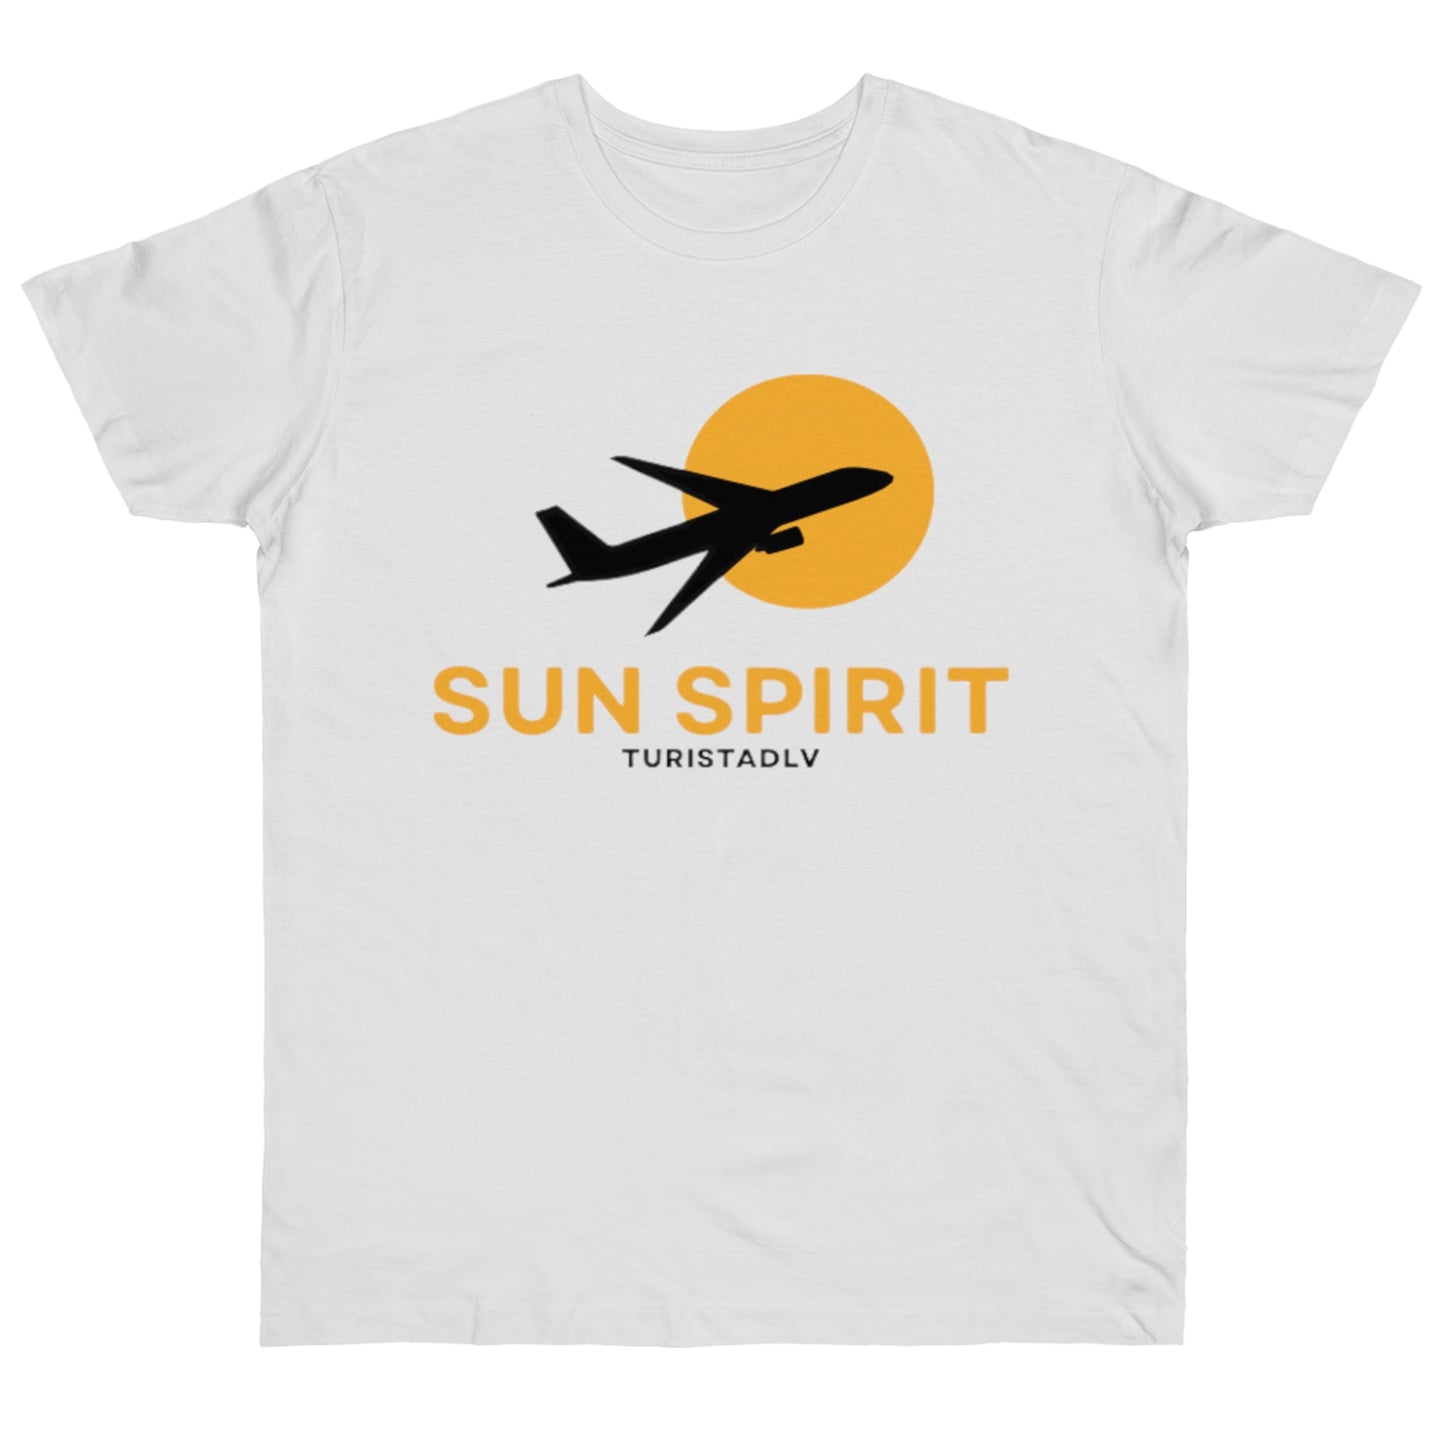 Camiseta de avión, sol, camiseta de piloto, camisa de viajero, camiseta inspiradora, camiseta de sol, libertad, regalo, aviación, viaje